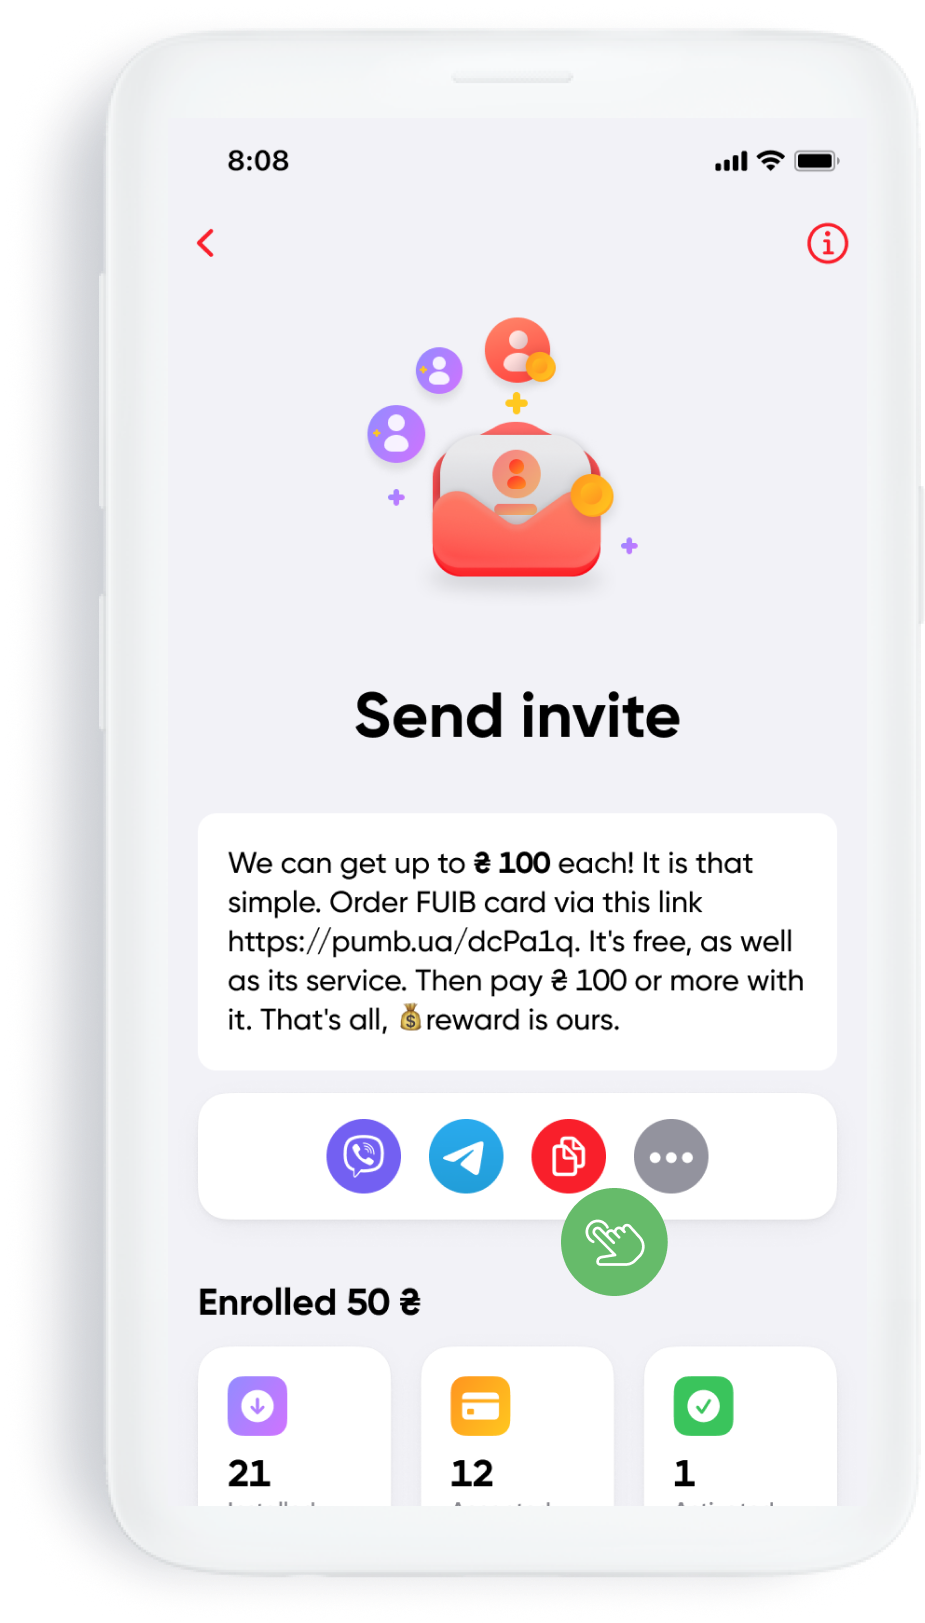 Send an invitation to a friend through a convenient messenger